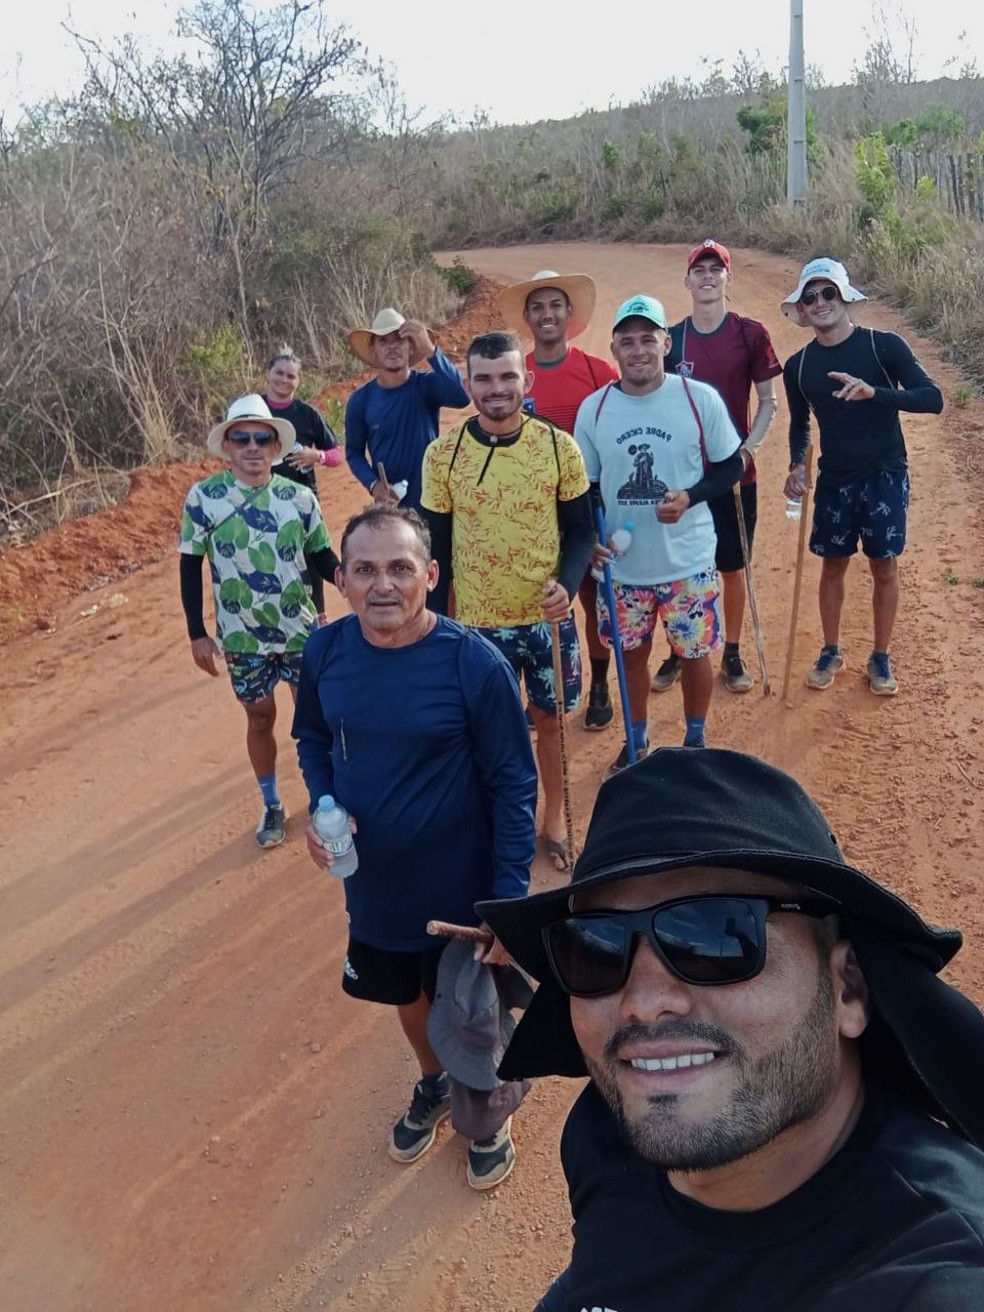 Grupo faz caminhada de 80 km até Juazeiro do Norte, no Ceará, para pagar promessa para Padre Cícero. — Foto: Arquivo pessoal